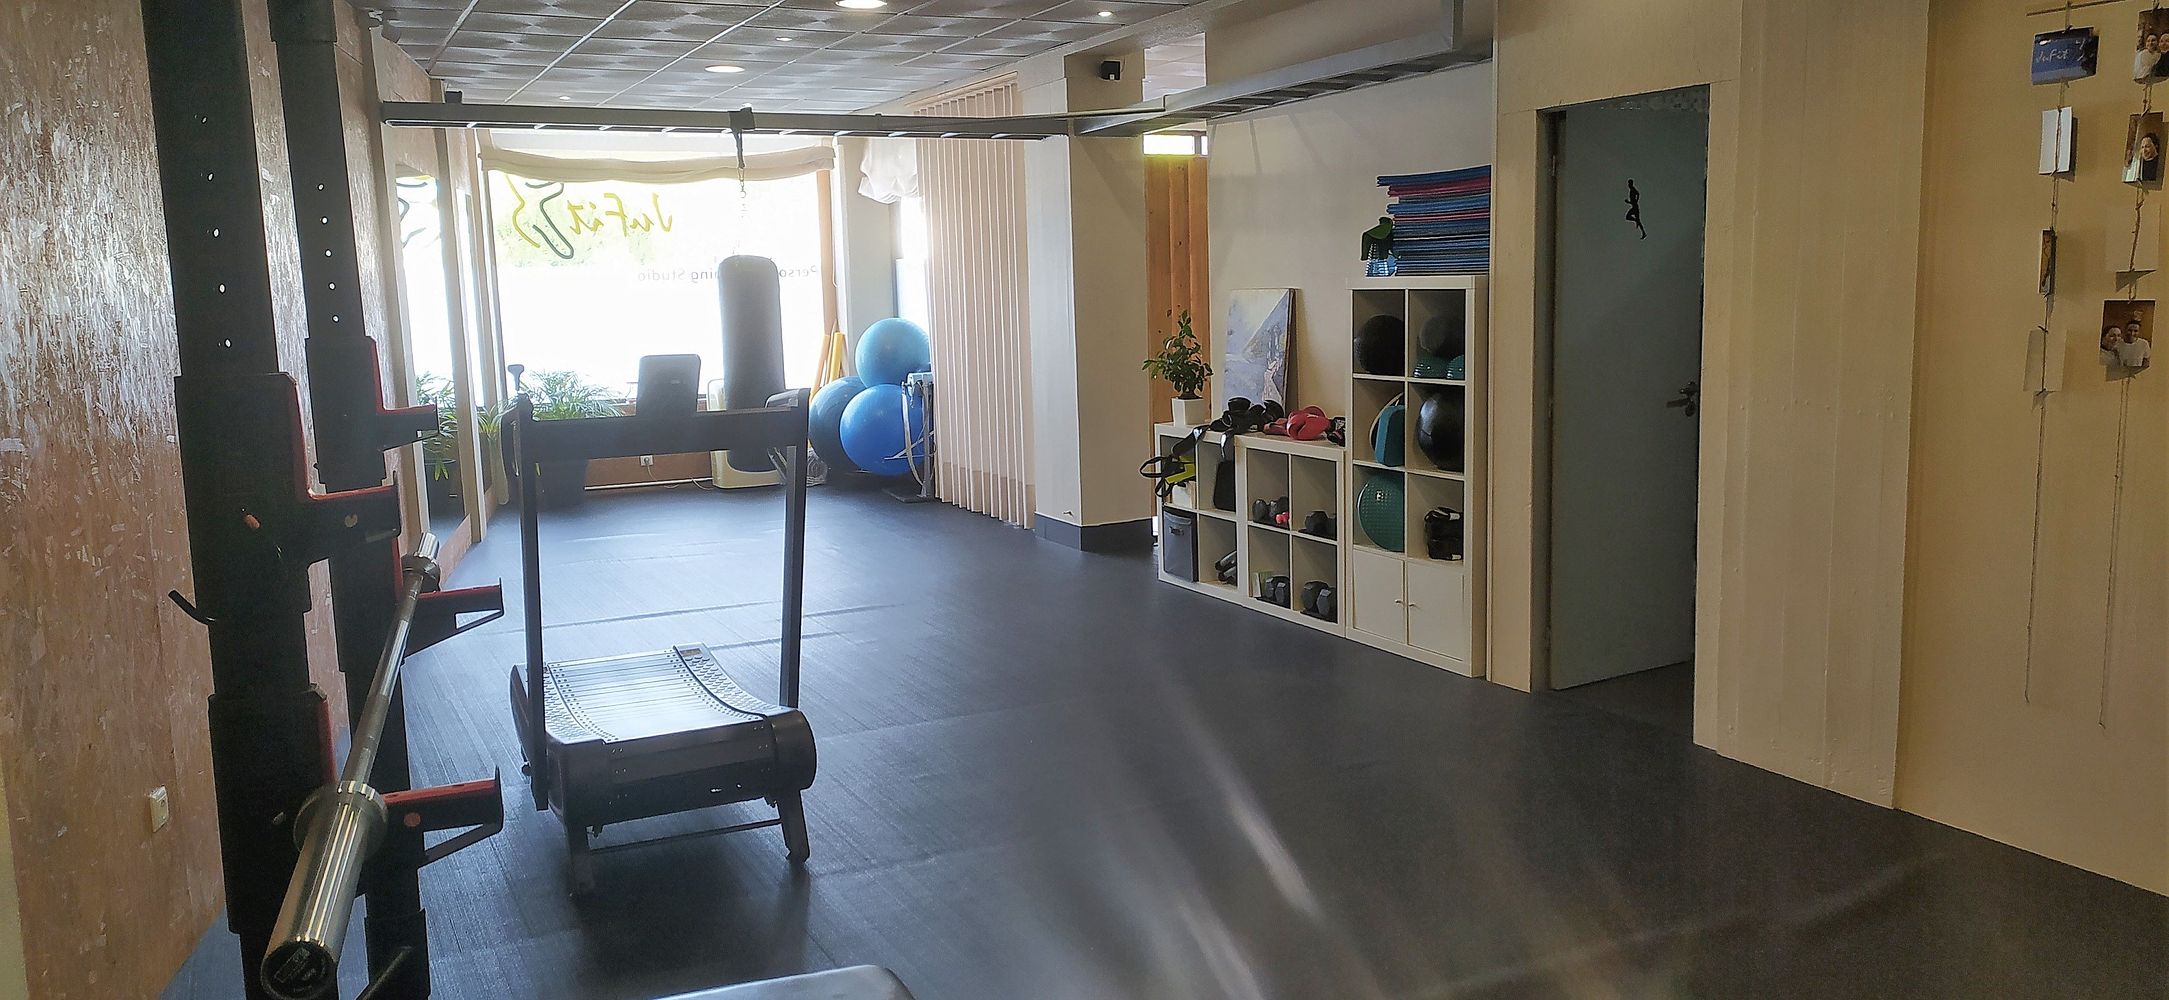 JuFit gym in Guimarães, Portugal